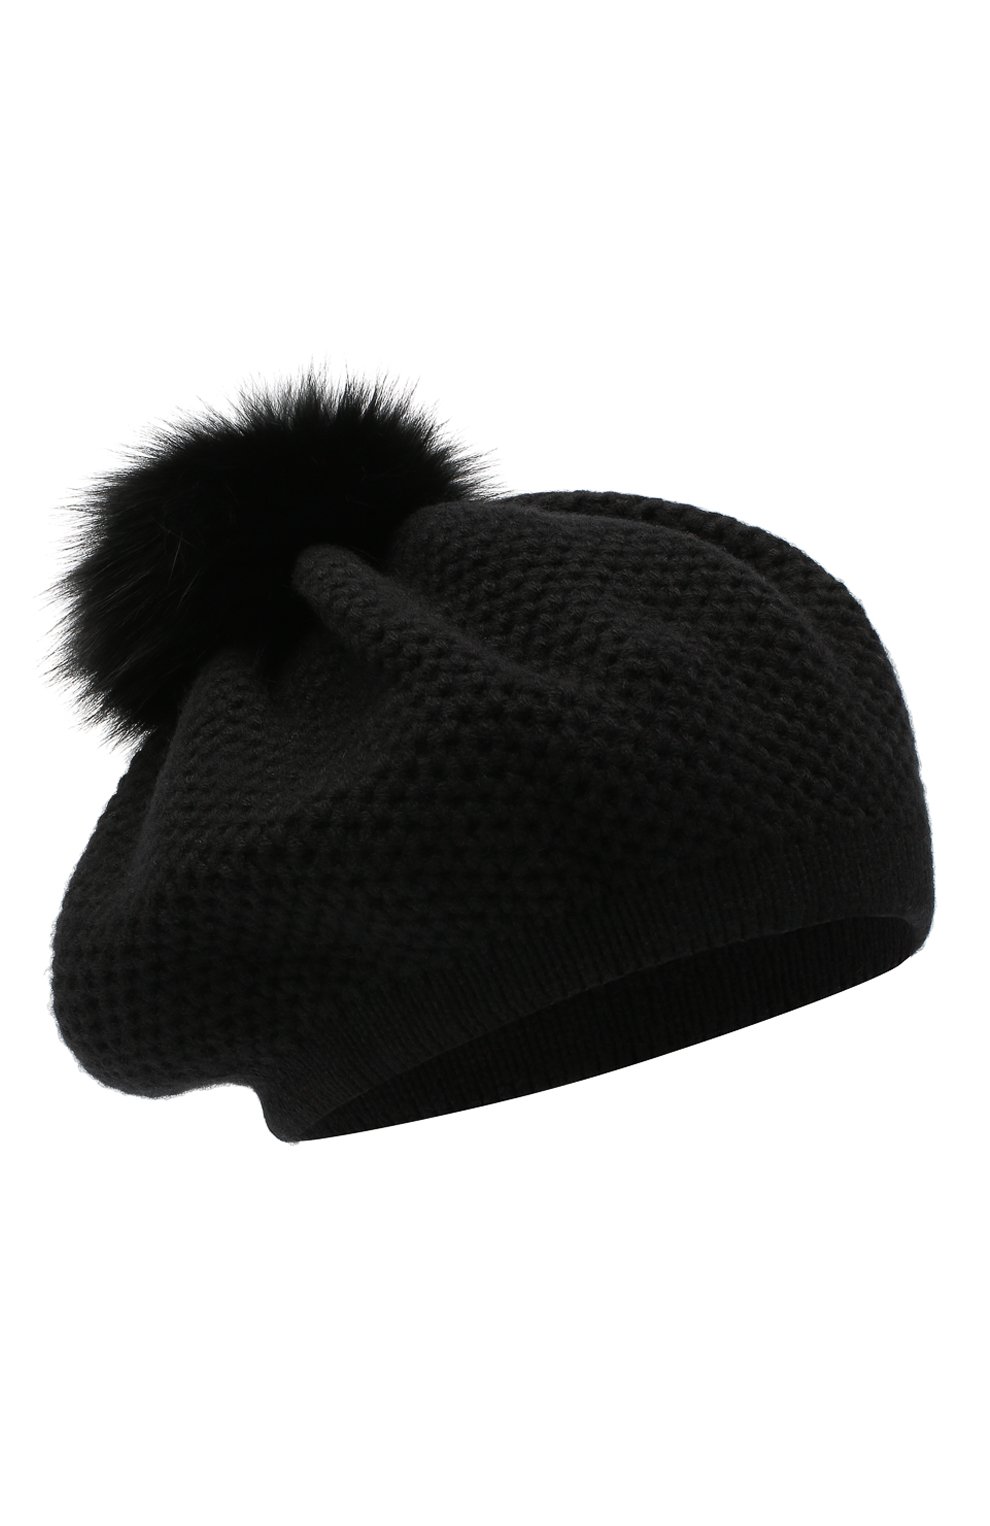 Женская кашемировая шапка INVERNI черного цвета, арт. 4732CMG1 | Фото 1 (Материал: Текстиль, Кашемир, Шерсть)